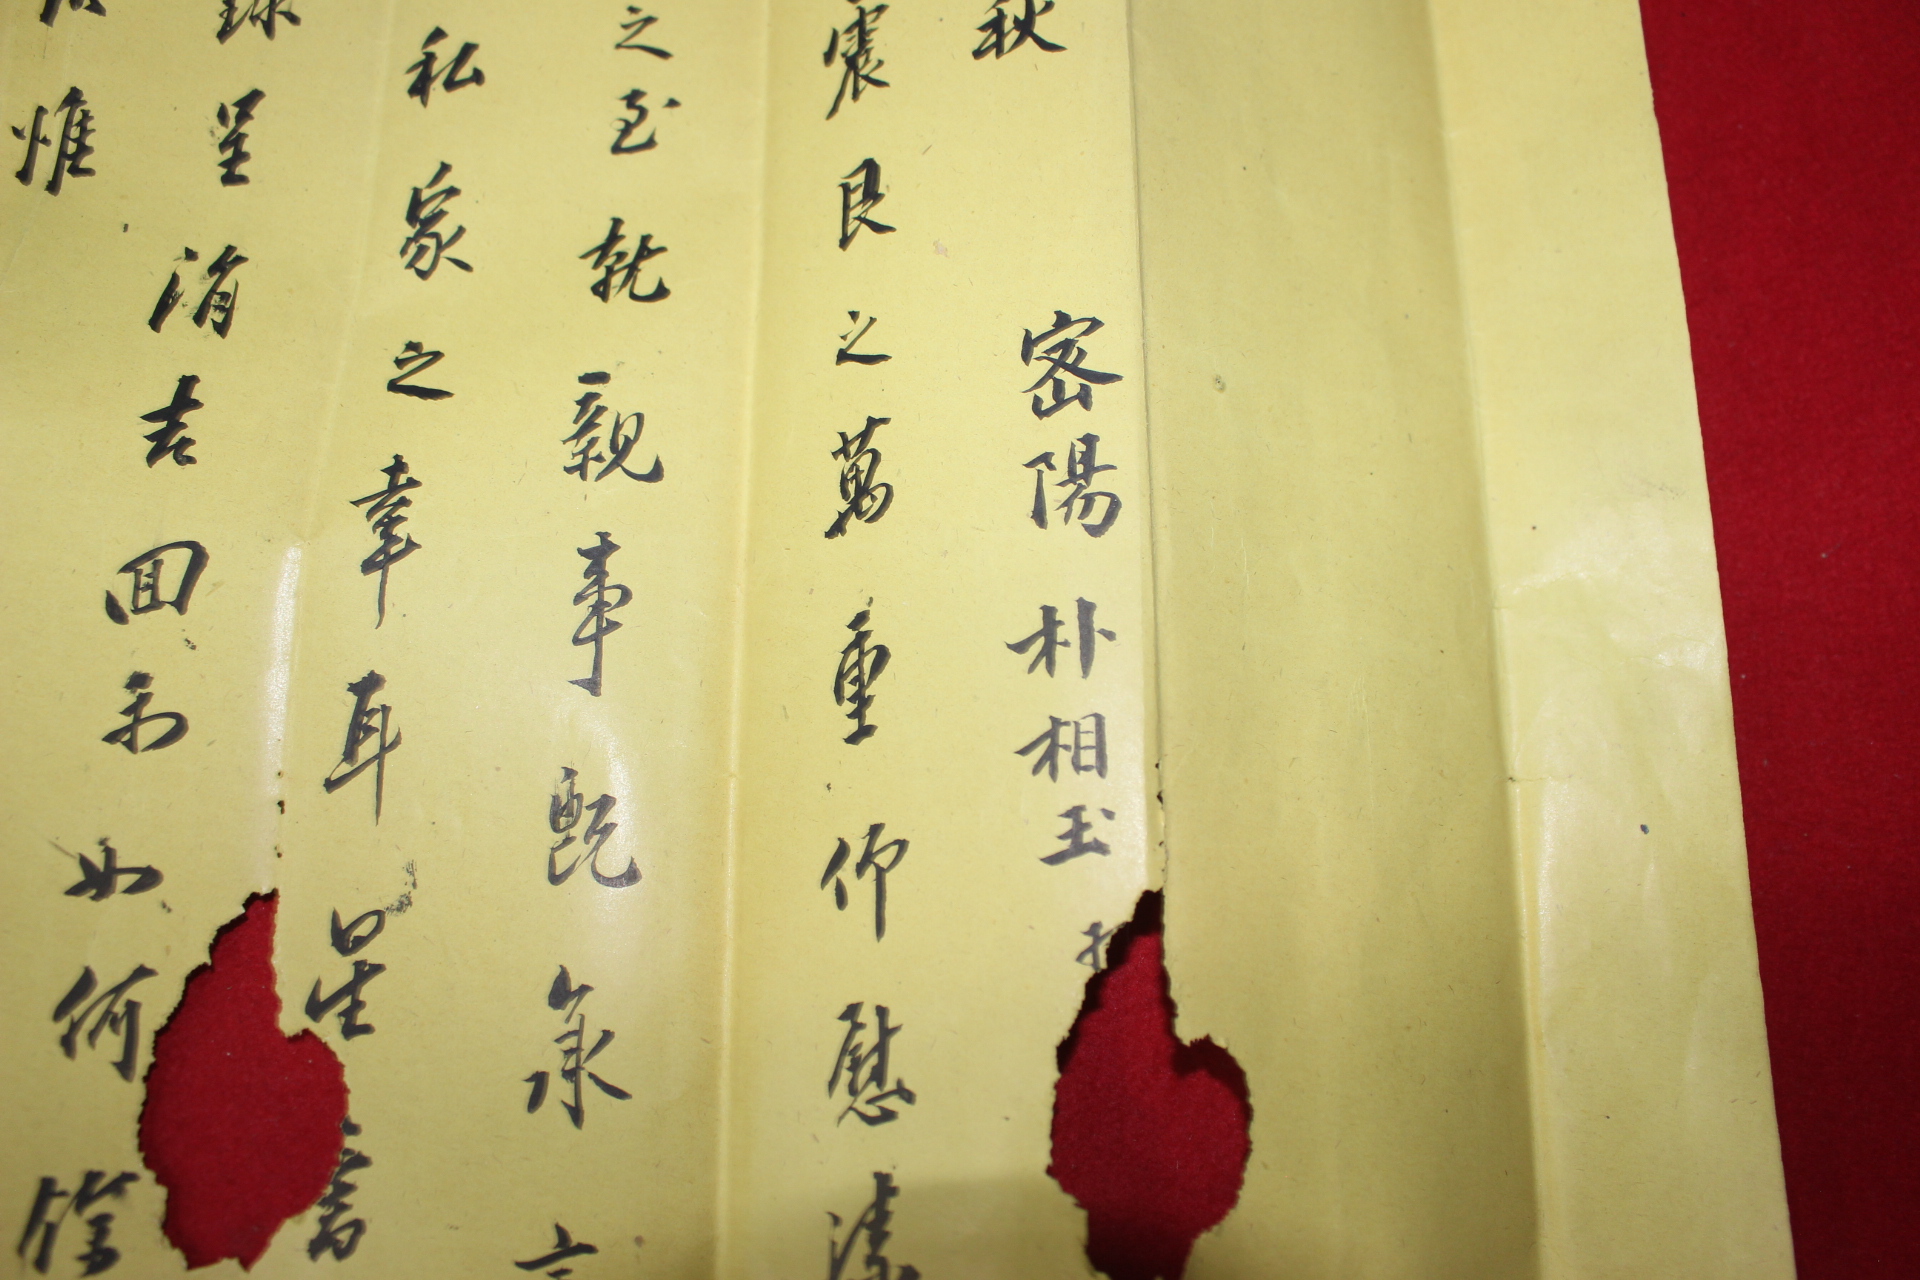 102-중국수입채색지 의금부도사,은율현감 박상옥(朴相玉) 간찰